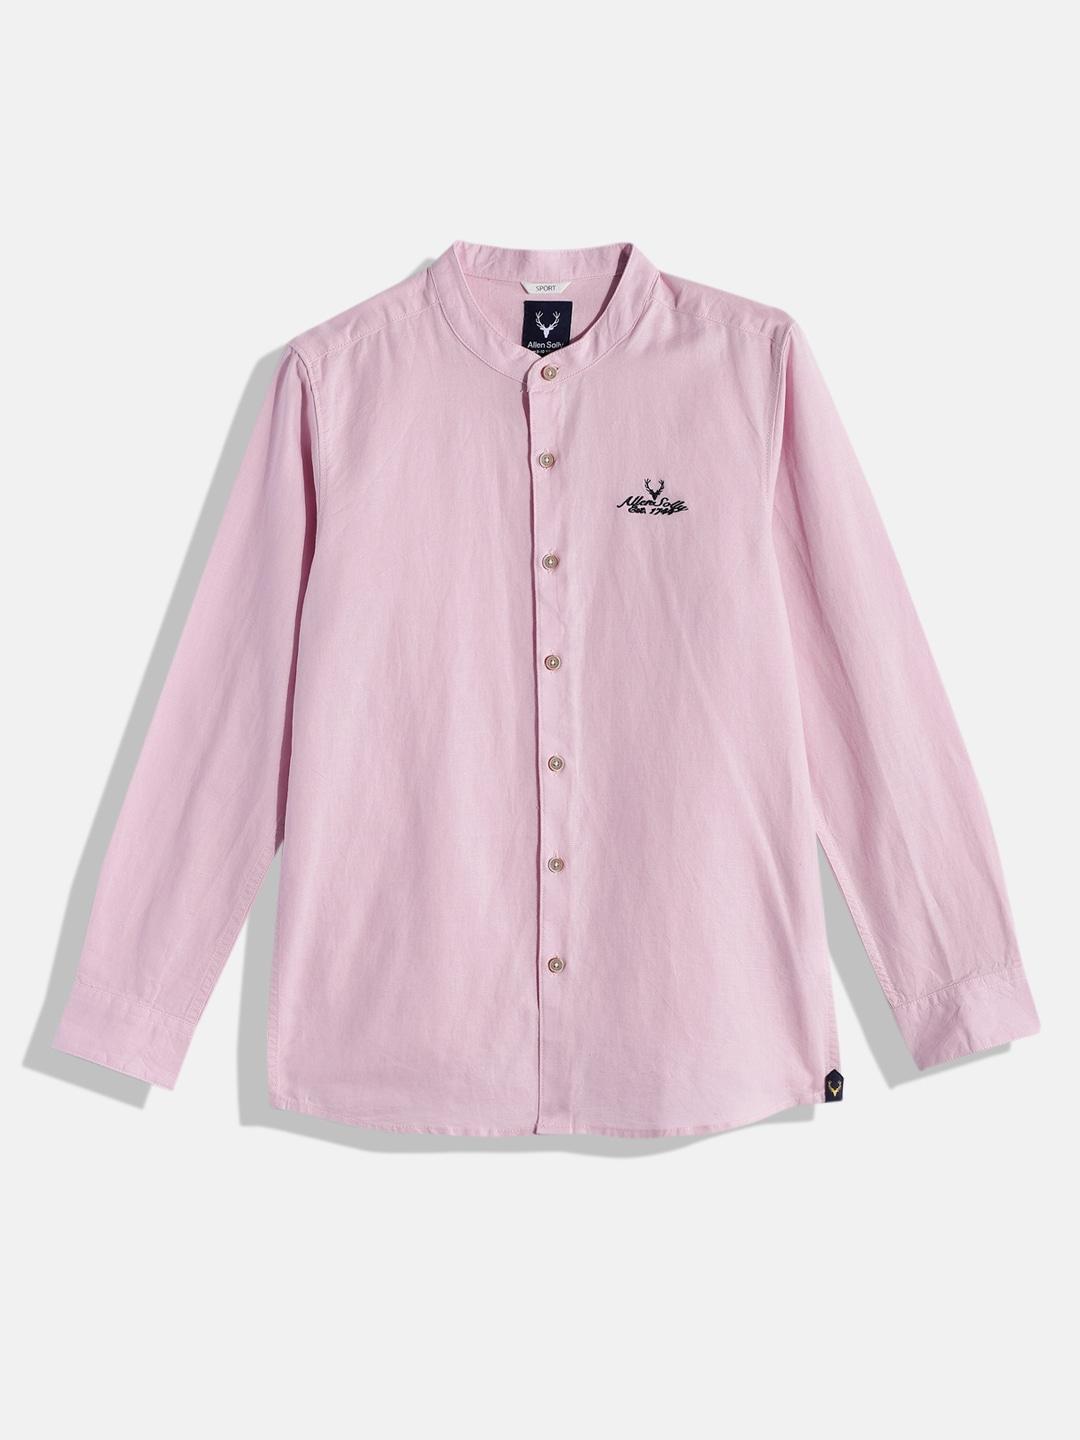 Allen Solly Junior Boys Pink Solid Casual Shirt